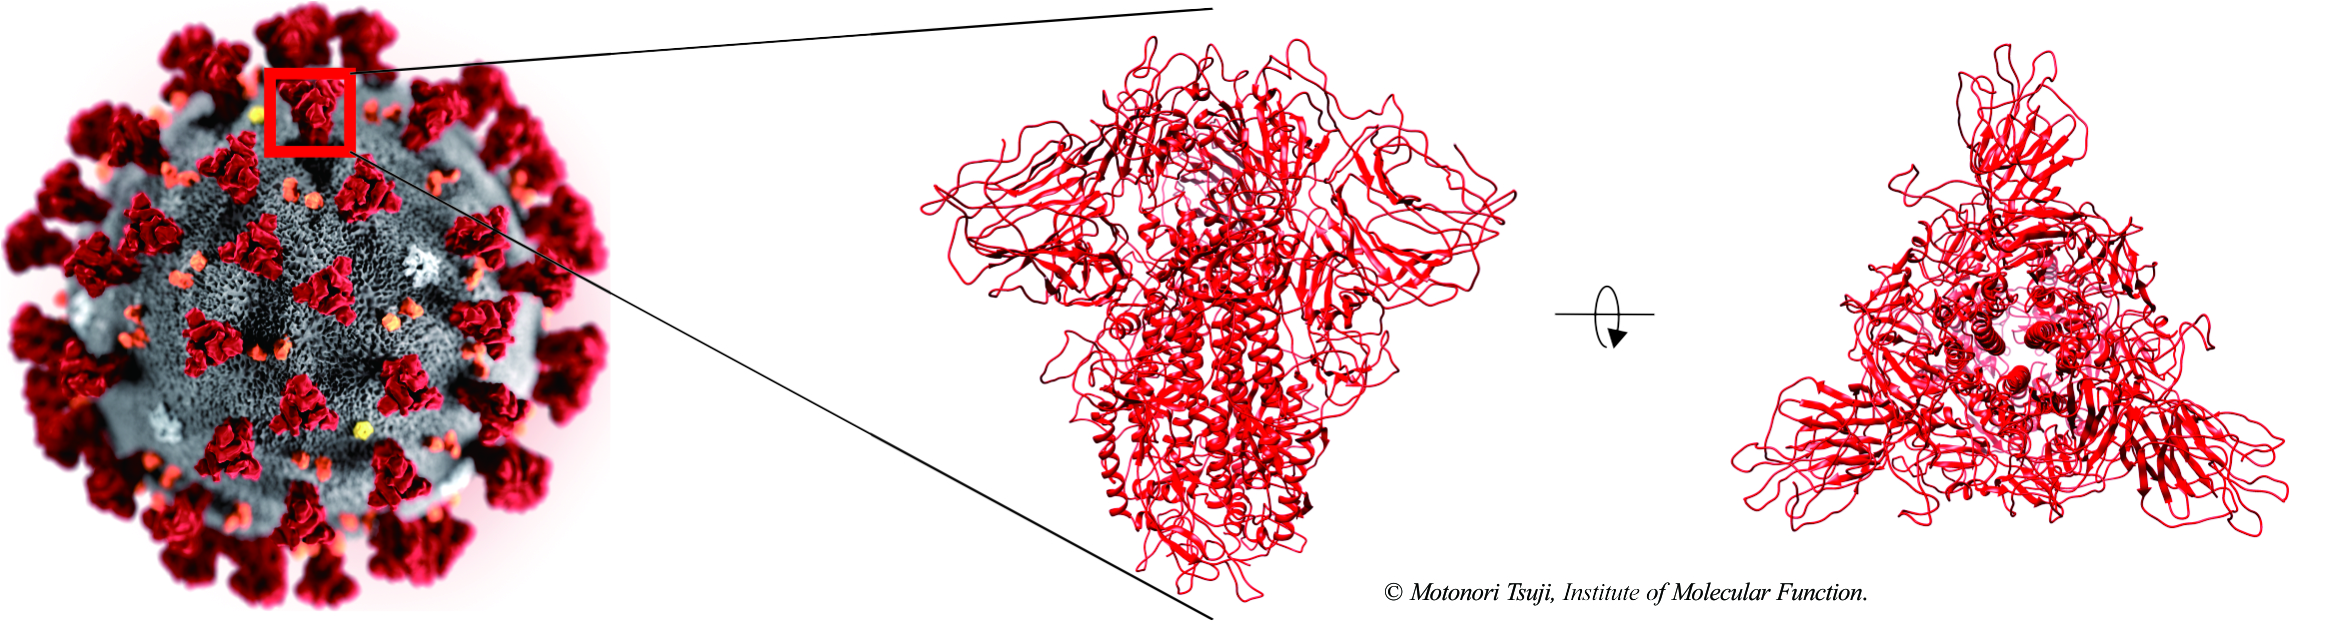 新型コロナウイルスに対する抗体医薬品の分子設計